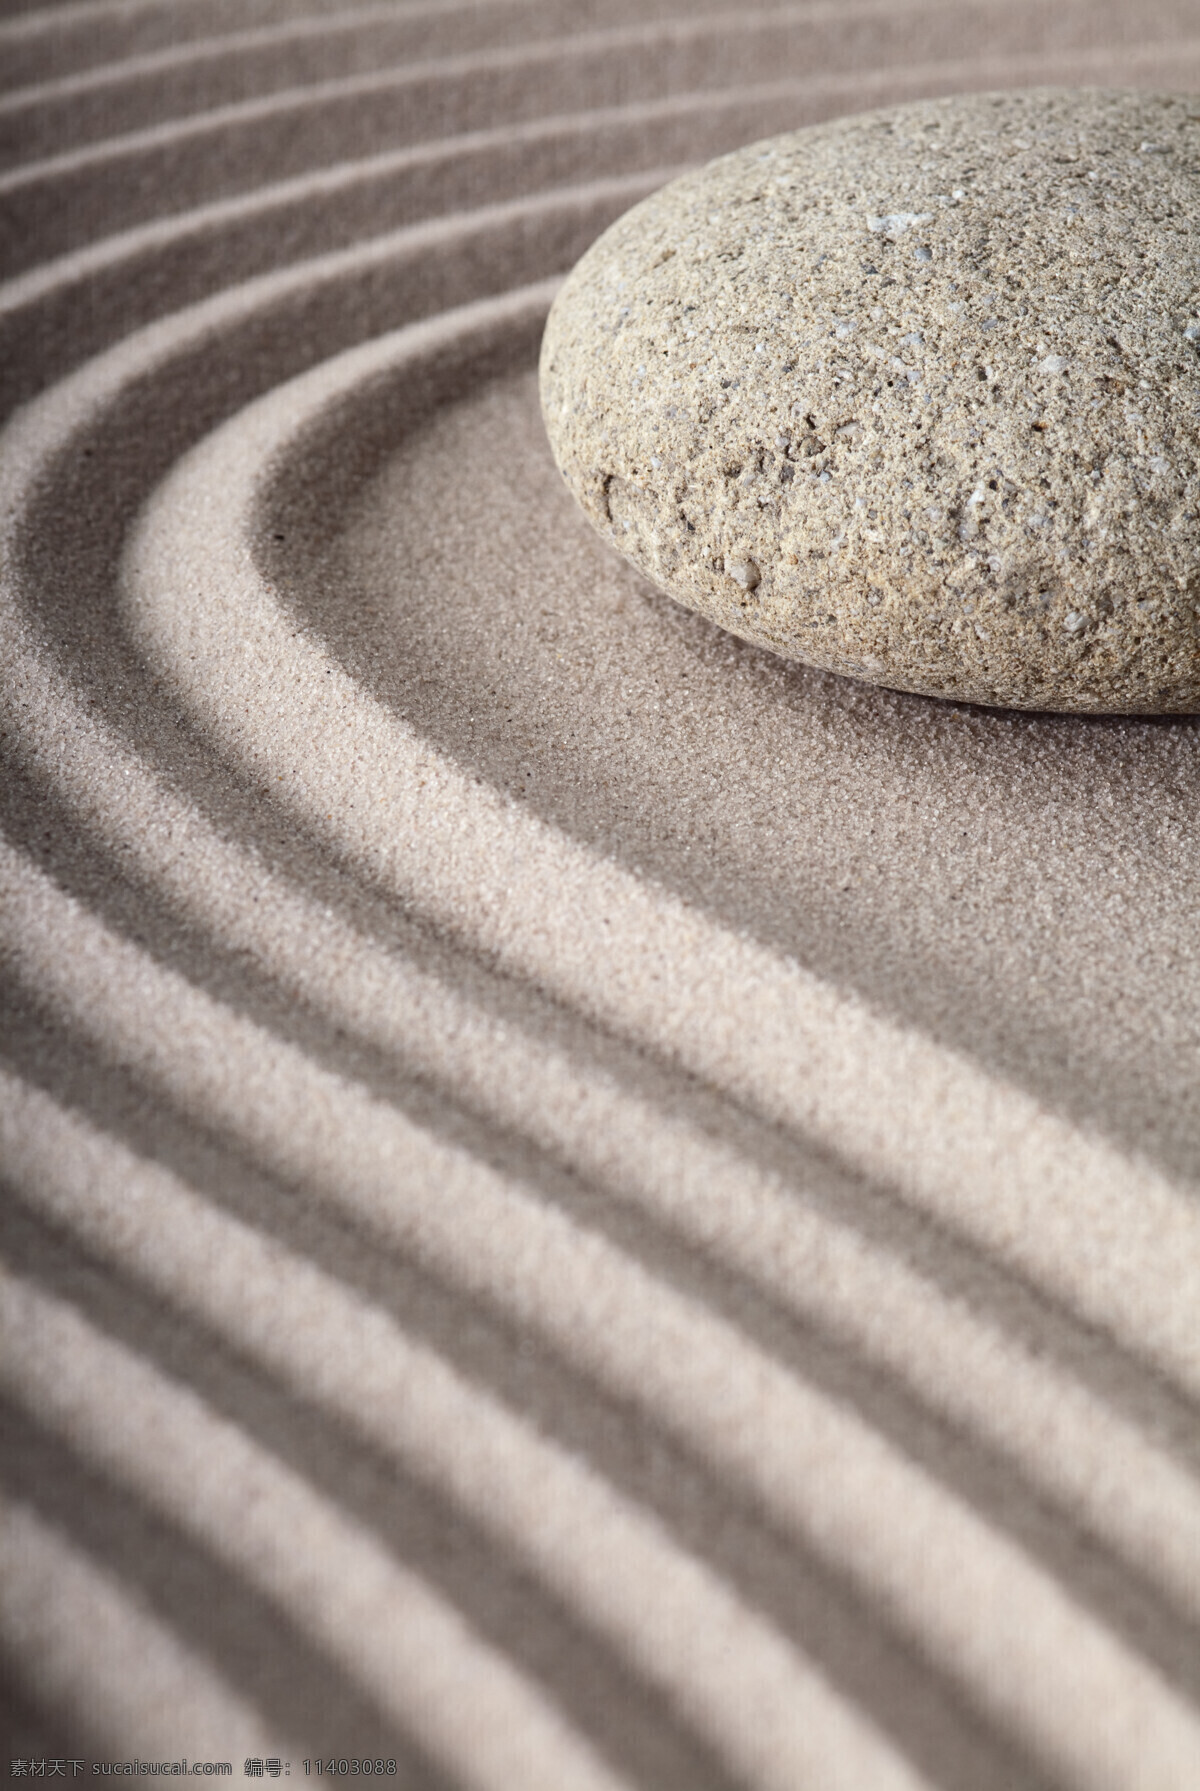 鹅卵石 沙子 背景 石头 石块 沙子背景 砂石 沙石背景 波纹 底纹背景 其他风光 风景图片